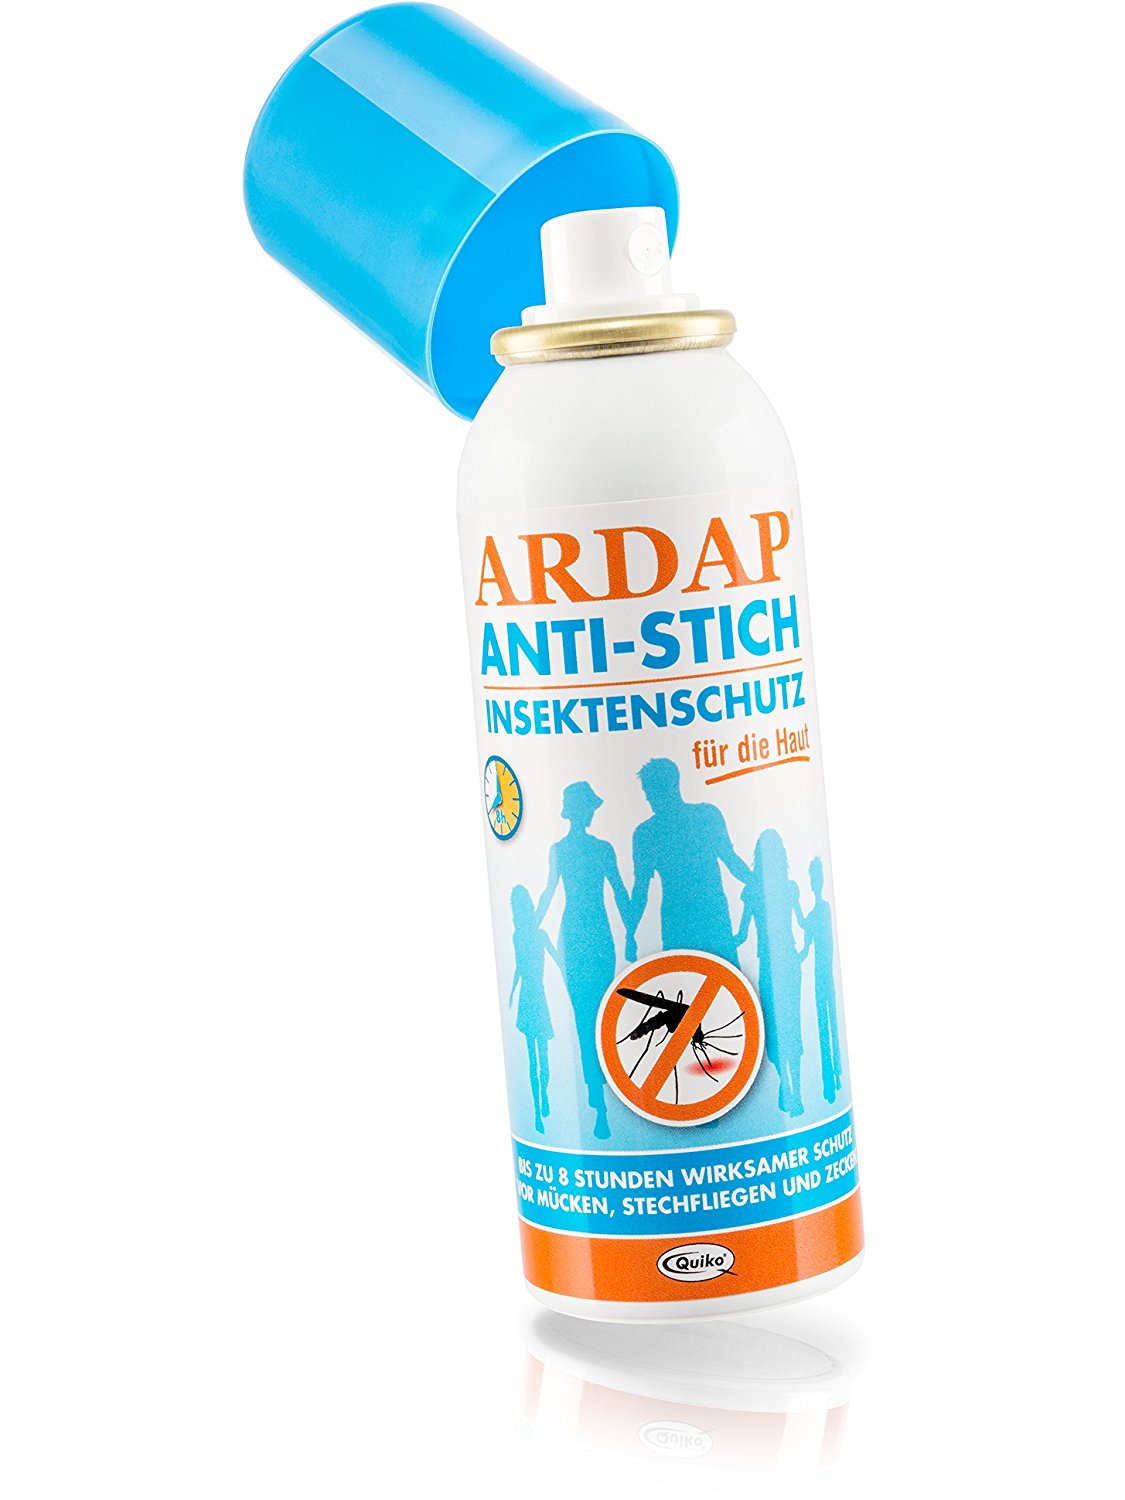 ARDAP Anti Stich Insektenschutz Spray / Wirksamer Schutz für die Haut gegen Mücken, Stechfliegen und Zecken bis zu 8 Stunden / 1 x 100ml